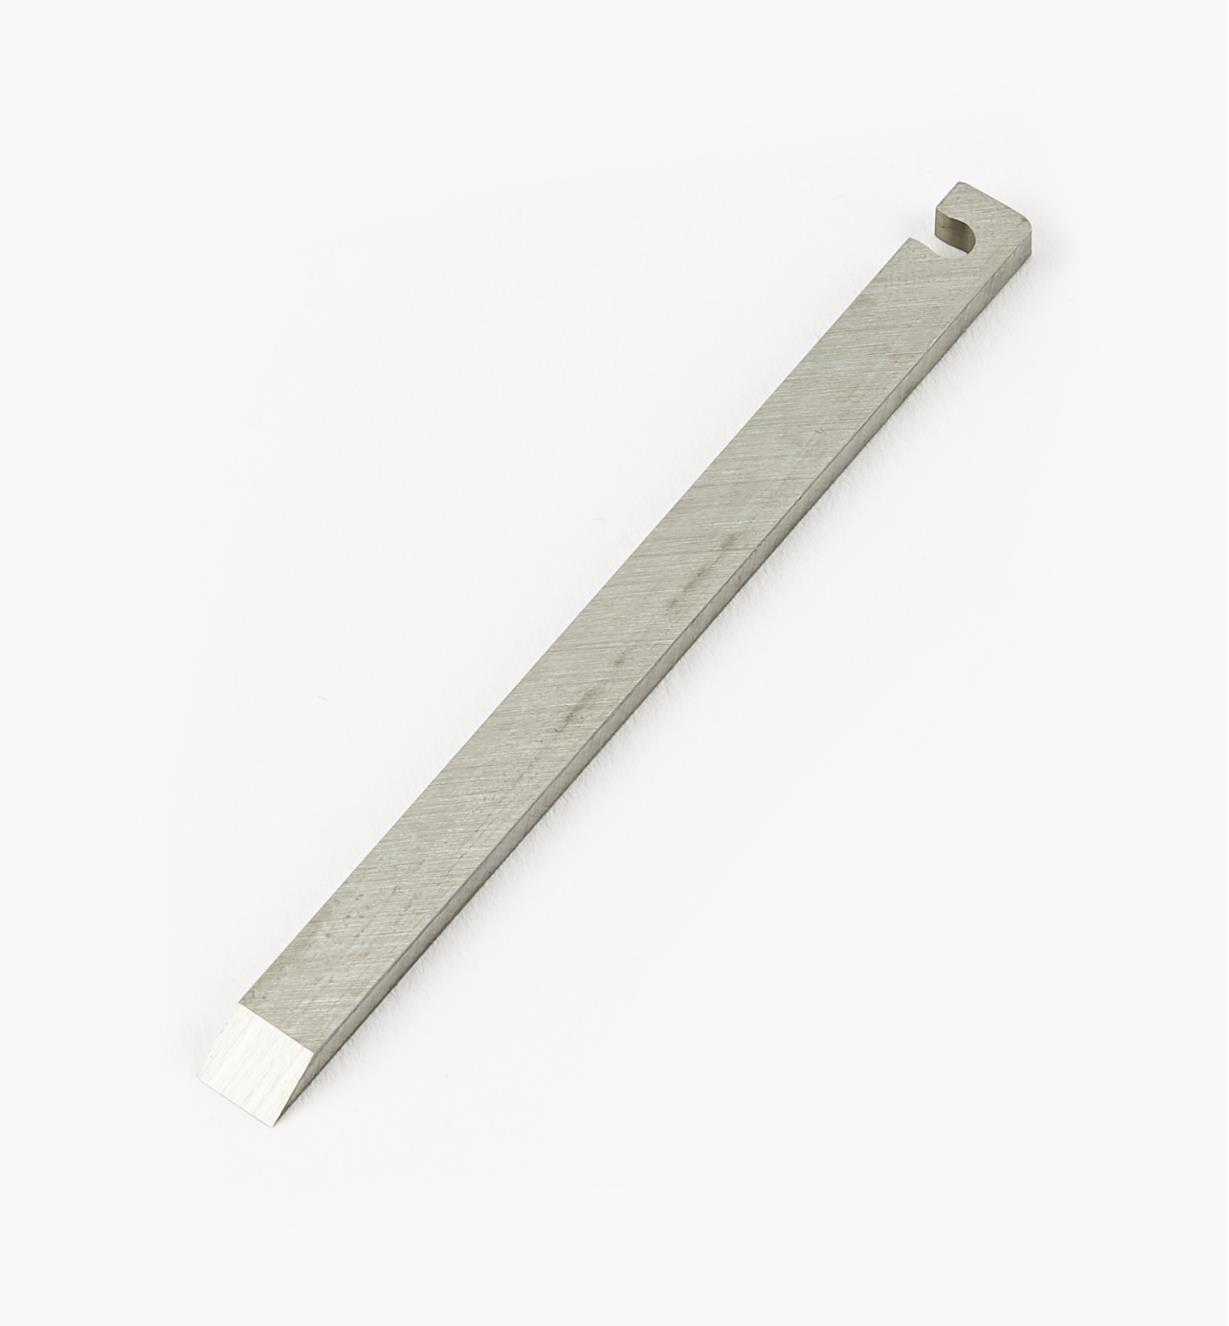 05P5236 - 6mm Standard LH Blade